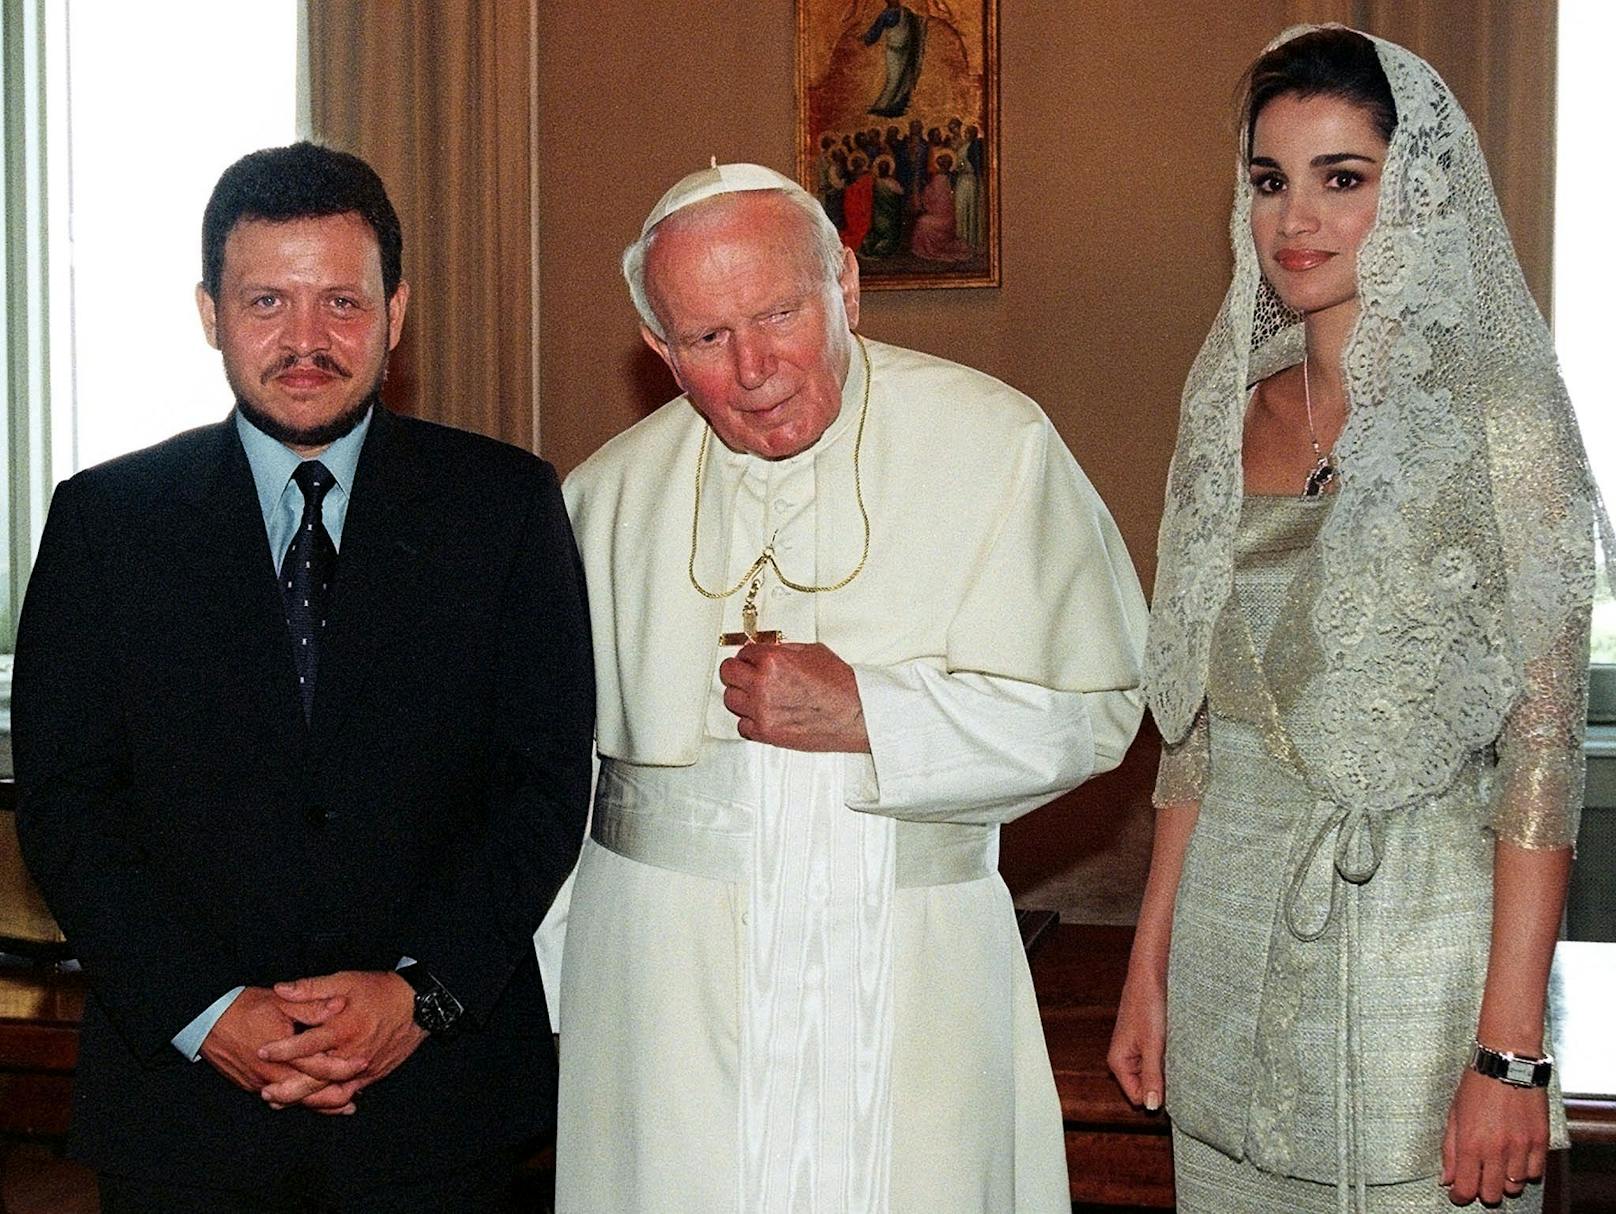 Ein halbes Jahr nach der Krönung folgte ein Treffen mit Papst Johannes Paul II. in Castelgandolfo, der päpstlichen Sommerresidenz außerhalb von Rom.